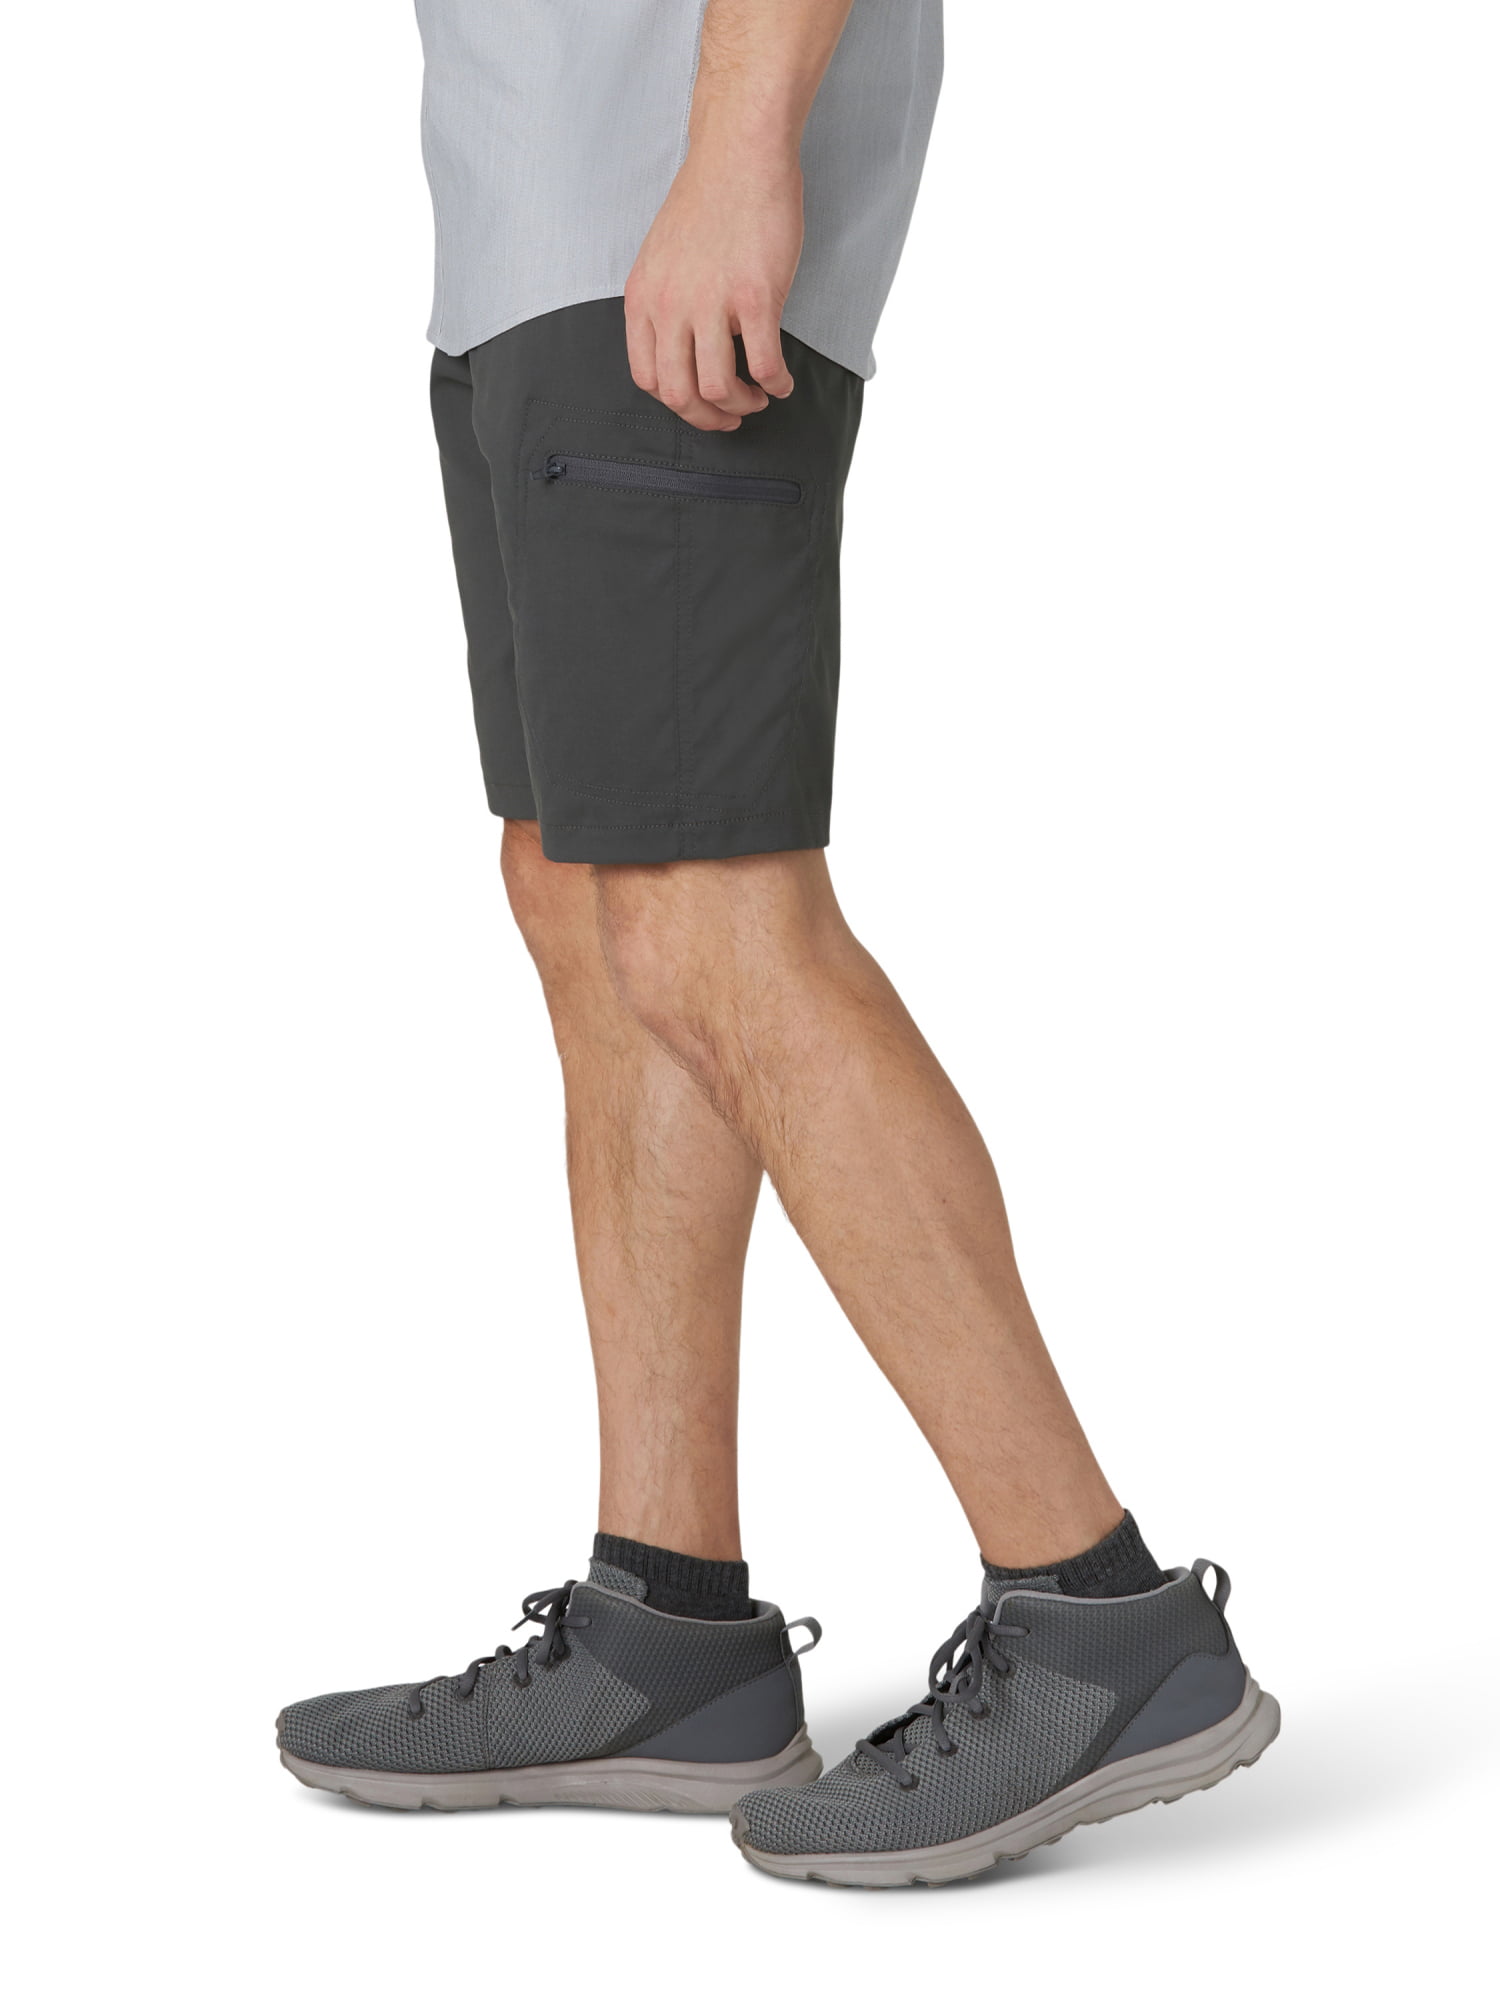 Buy > wrangler outdoor shorts walmart > in stock